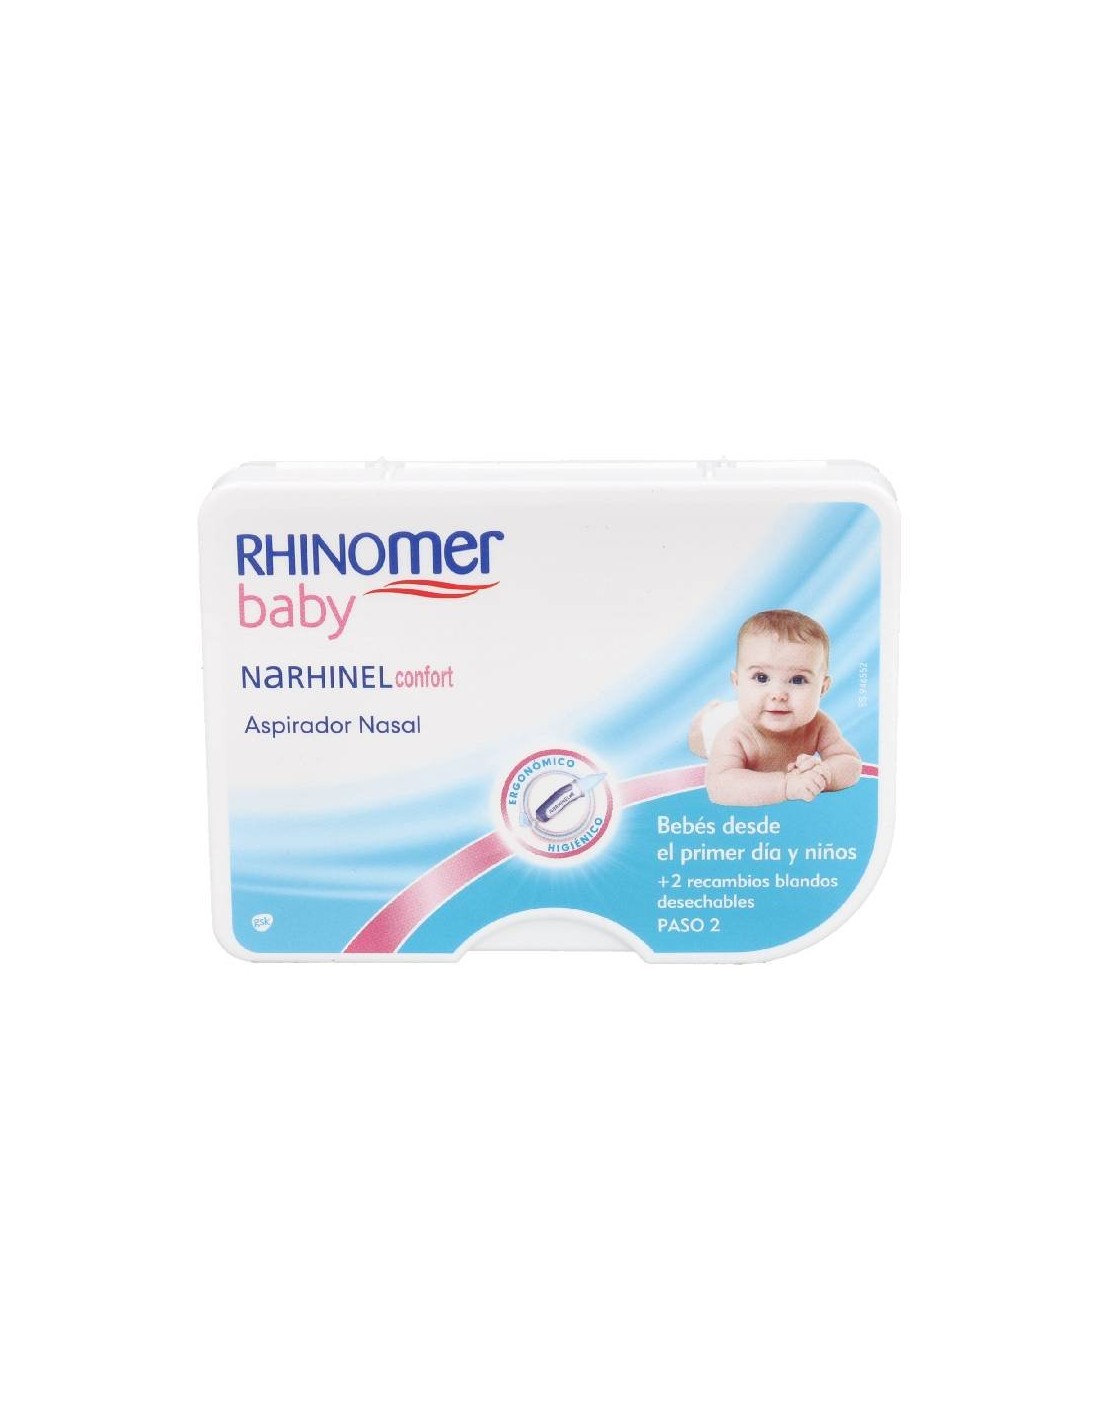 Rhinomer Baby Aspirador Nasal + 2 recambios blandos desechables